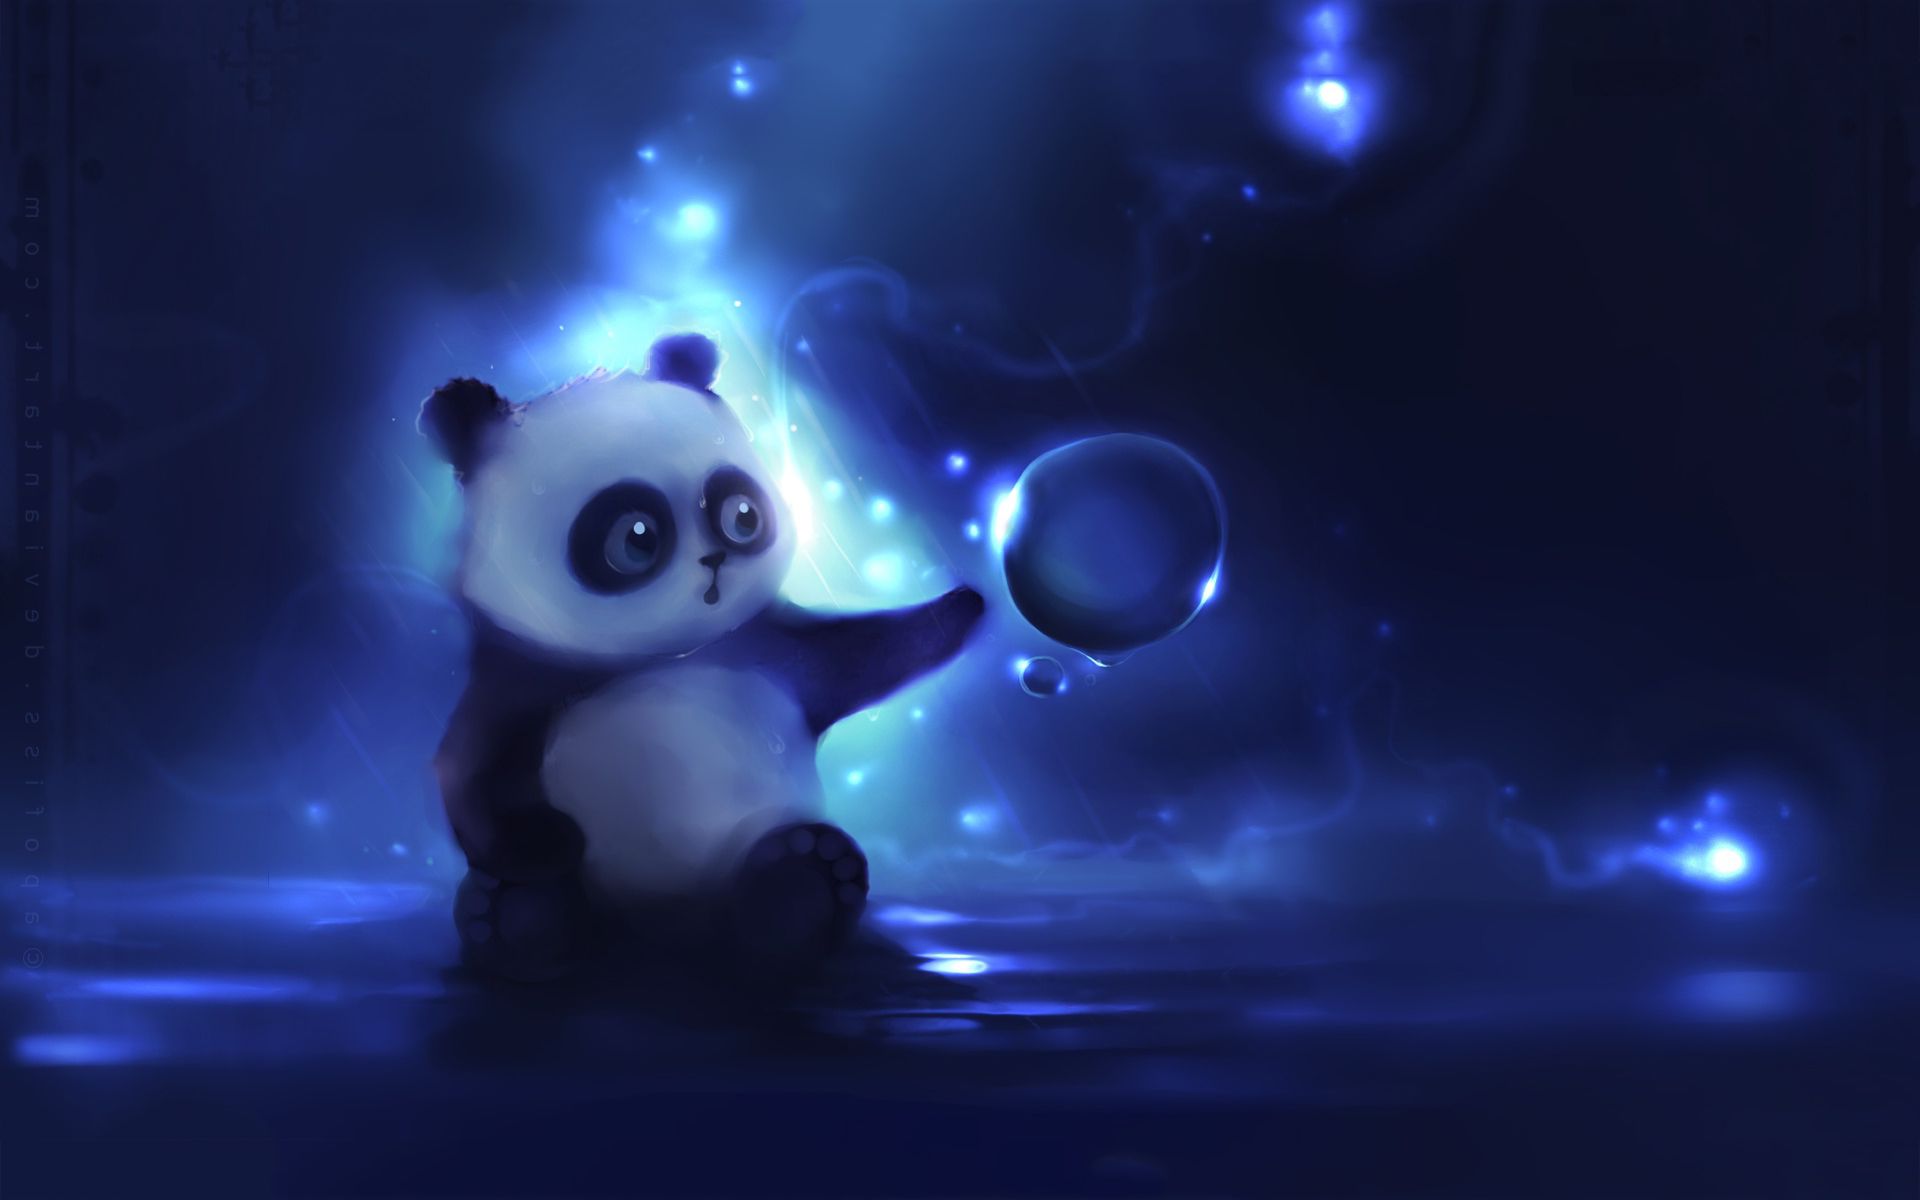 Little panda art